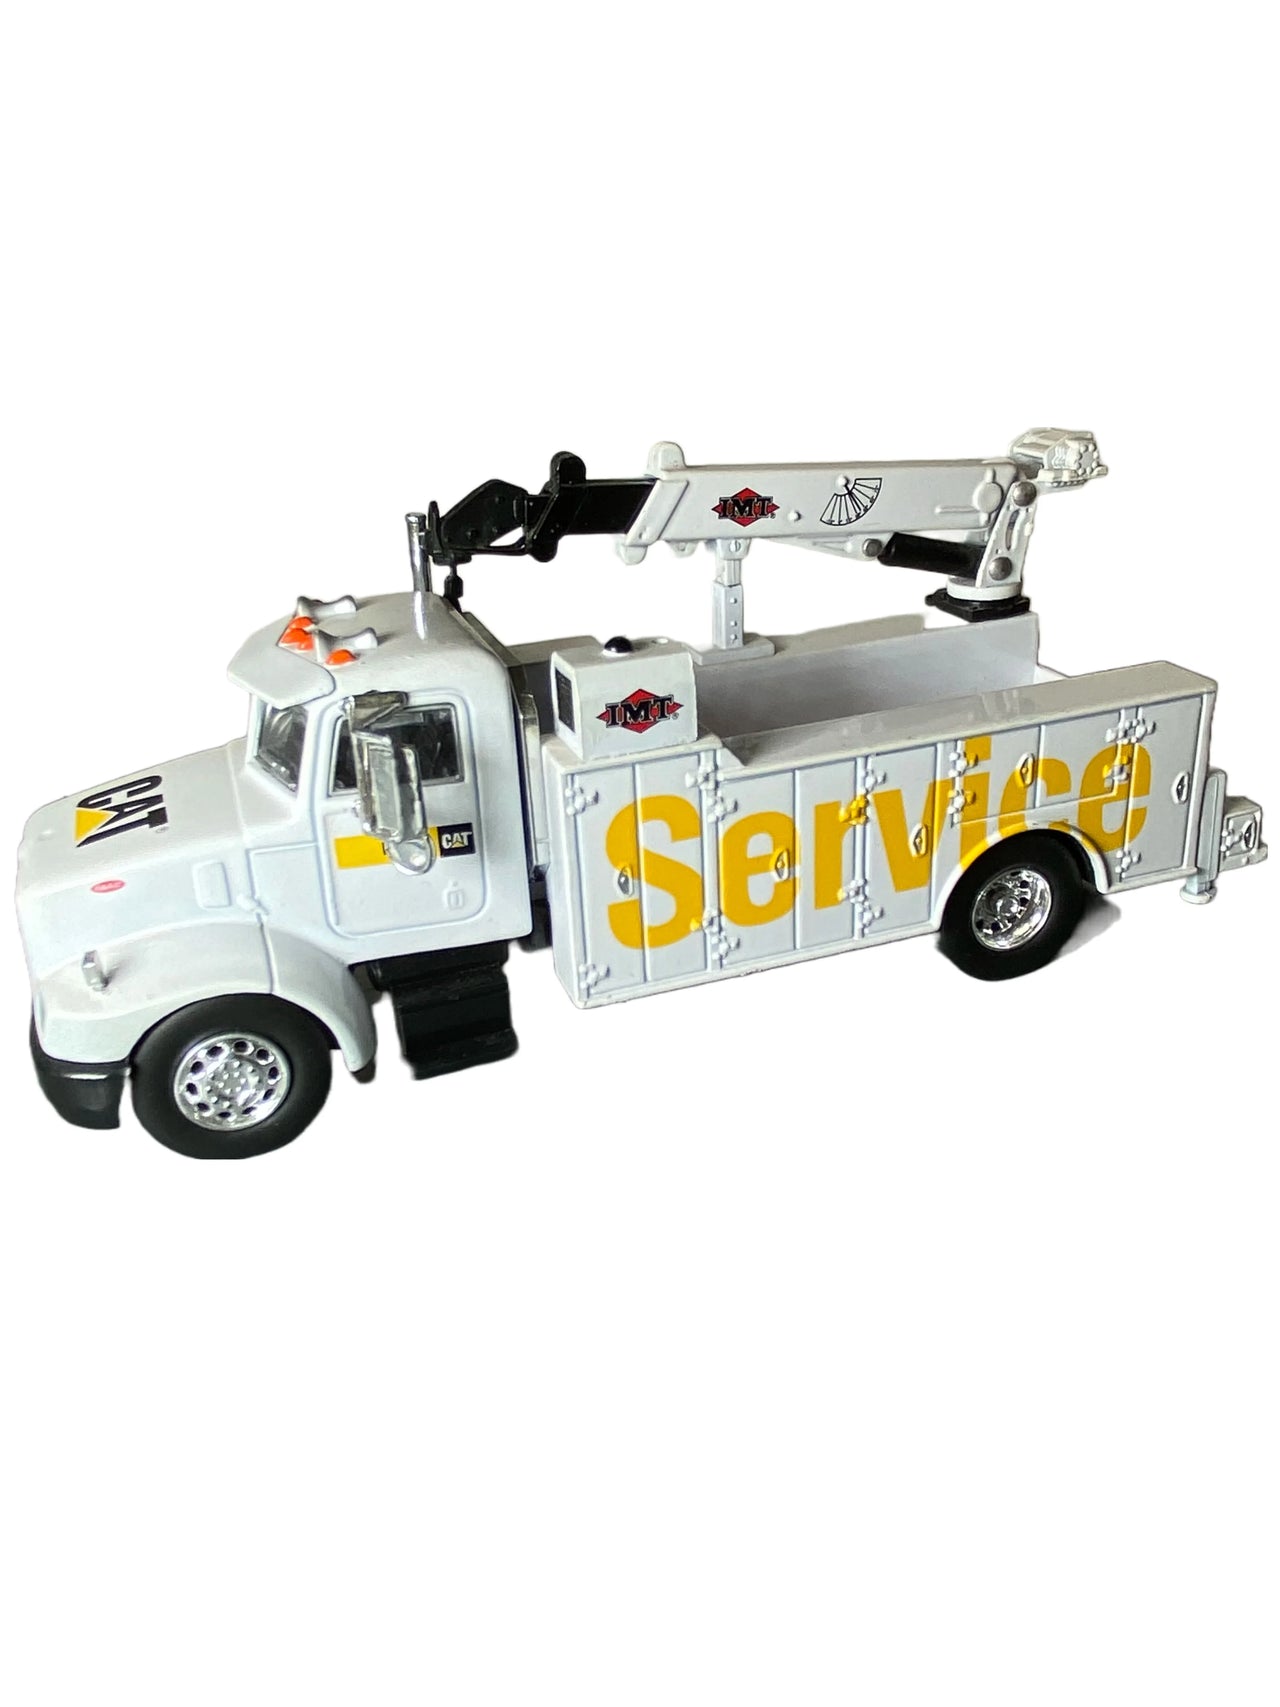 55118 Camión De Servicio Caterpillar 330 Escala 1:50 (Modelo Descontinuado)